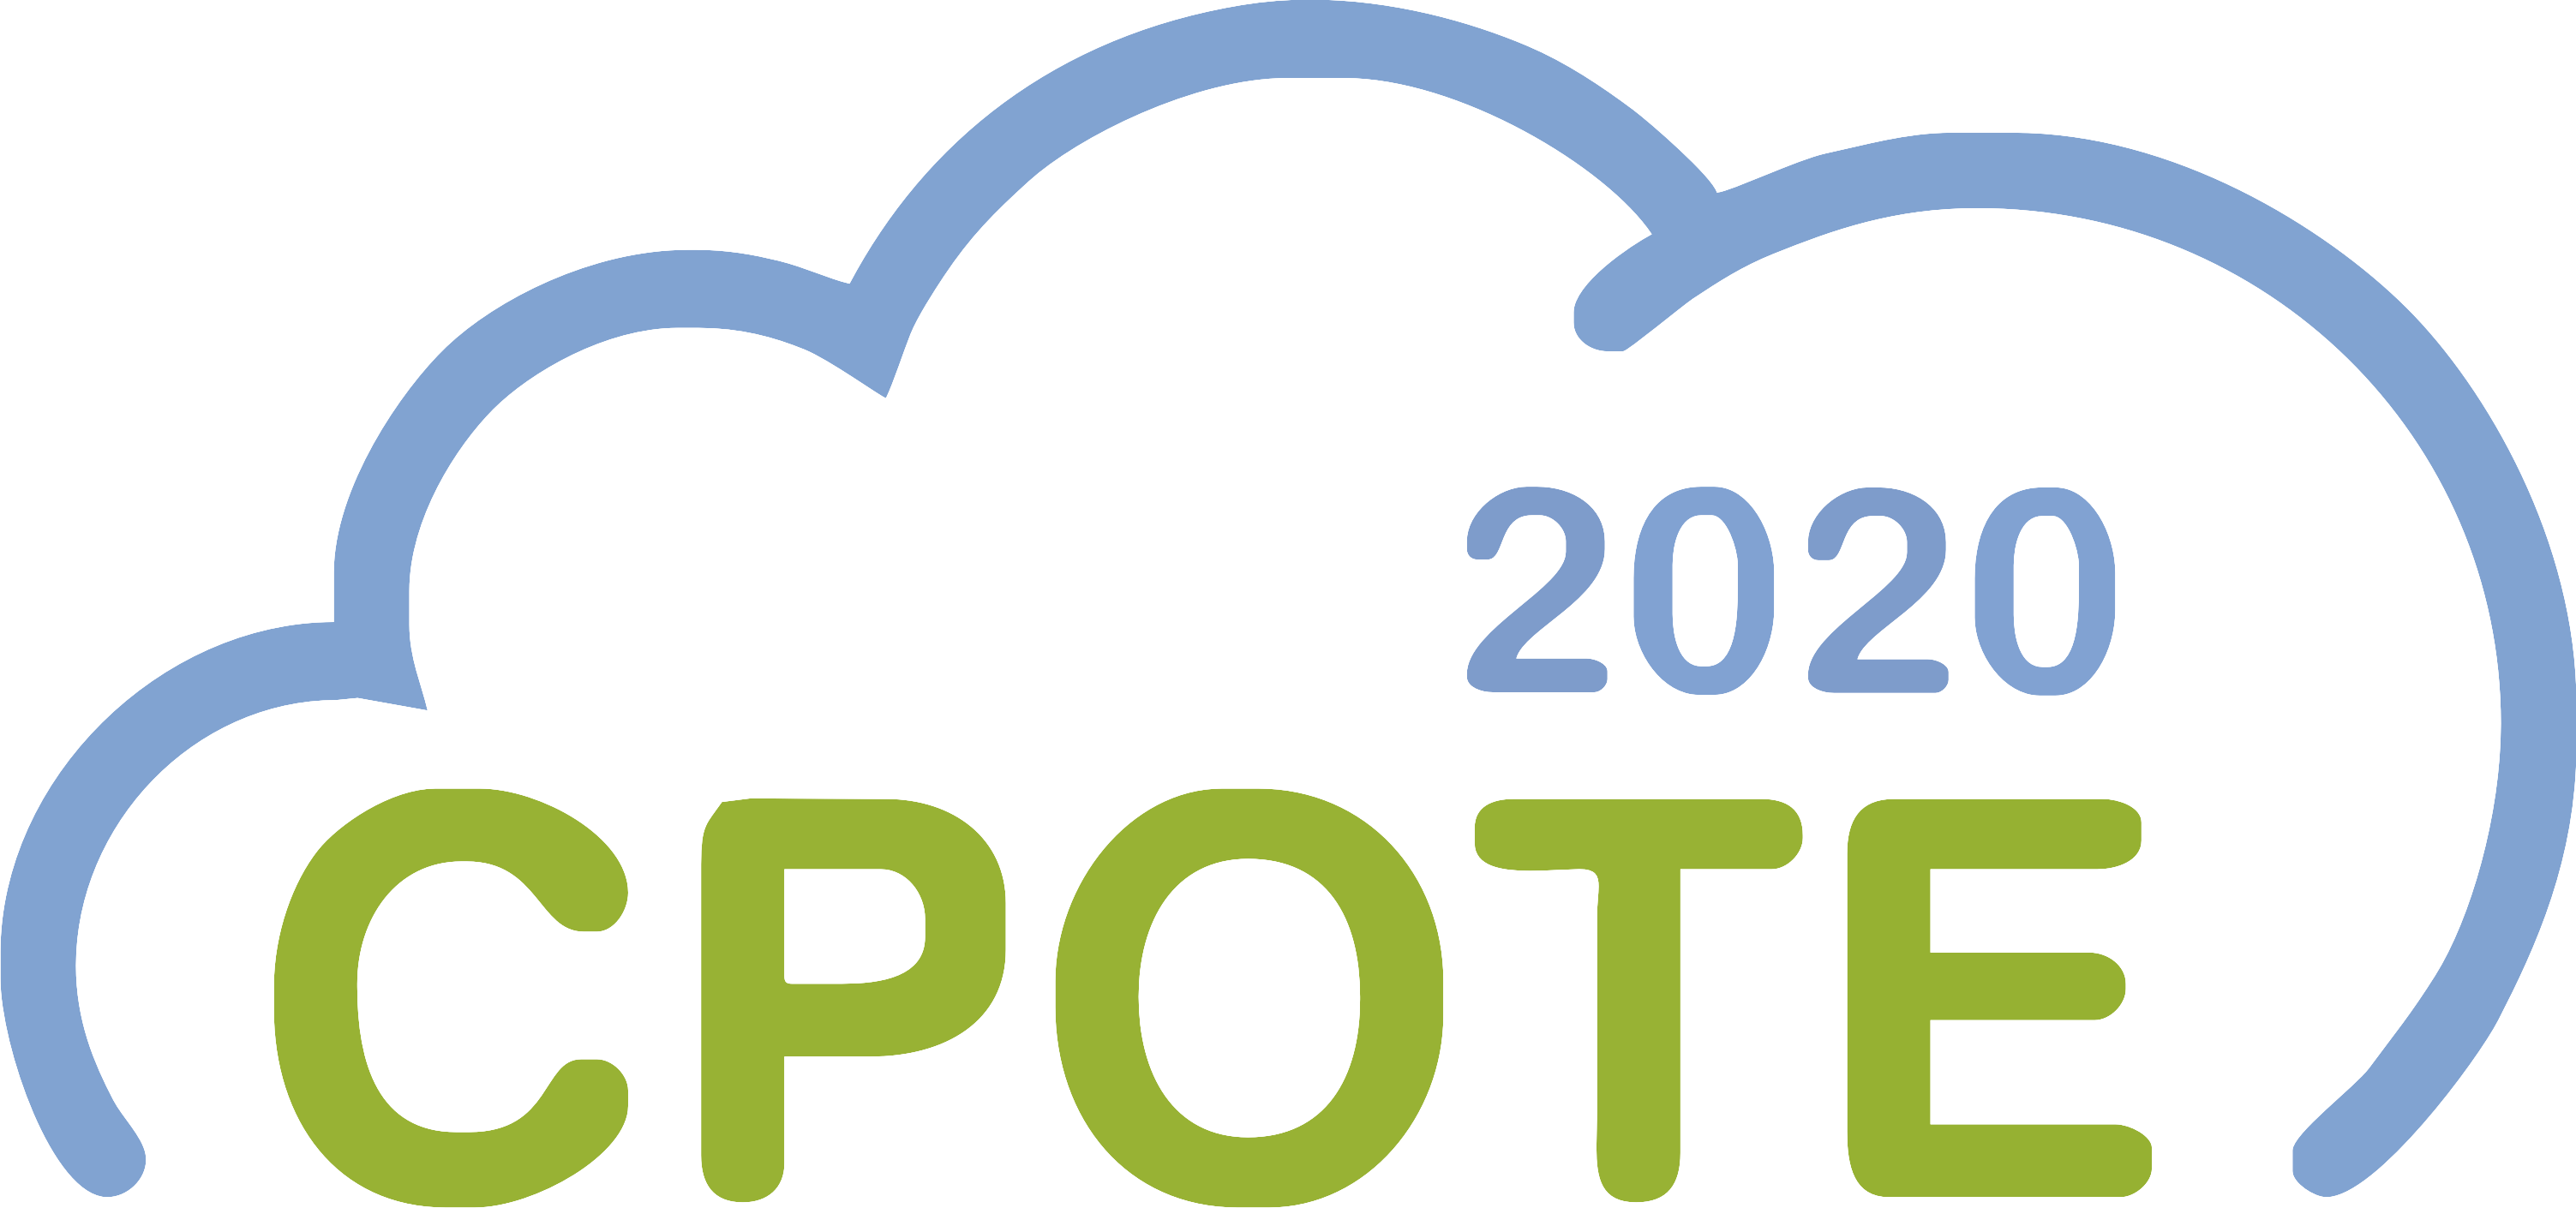 CPOTE2020 Logo